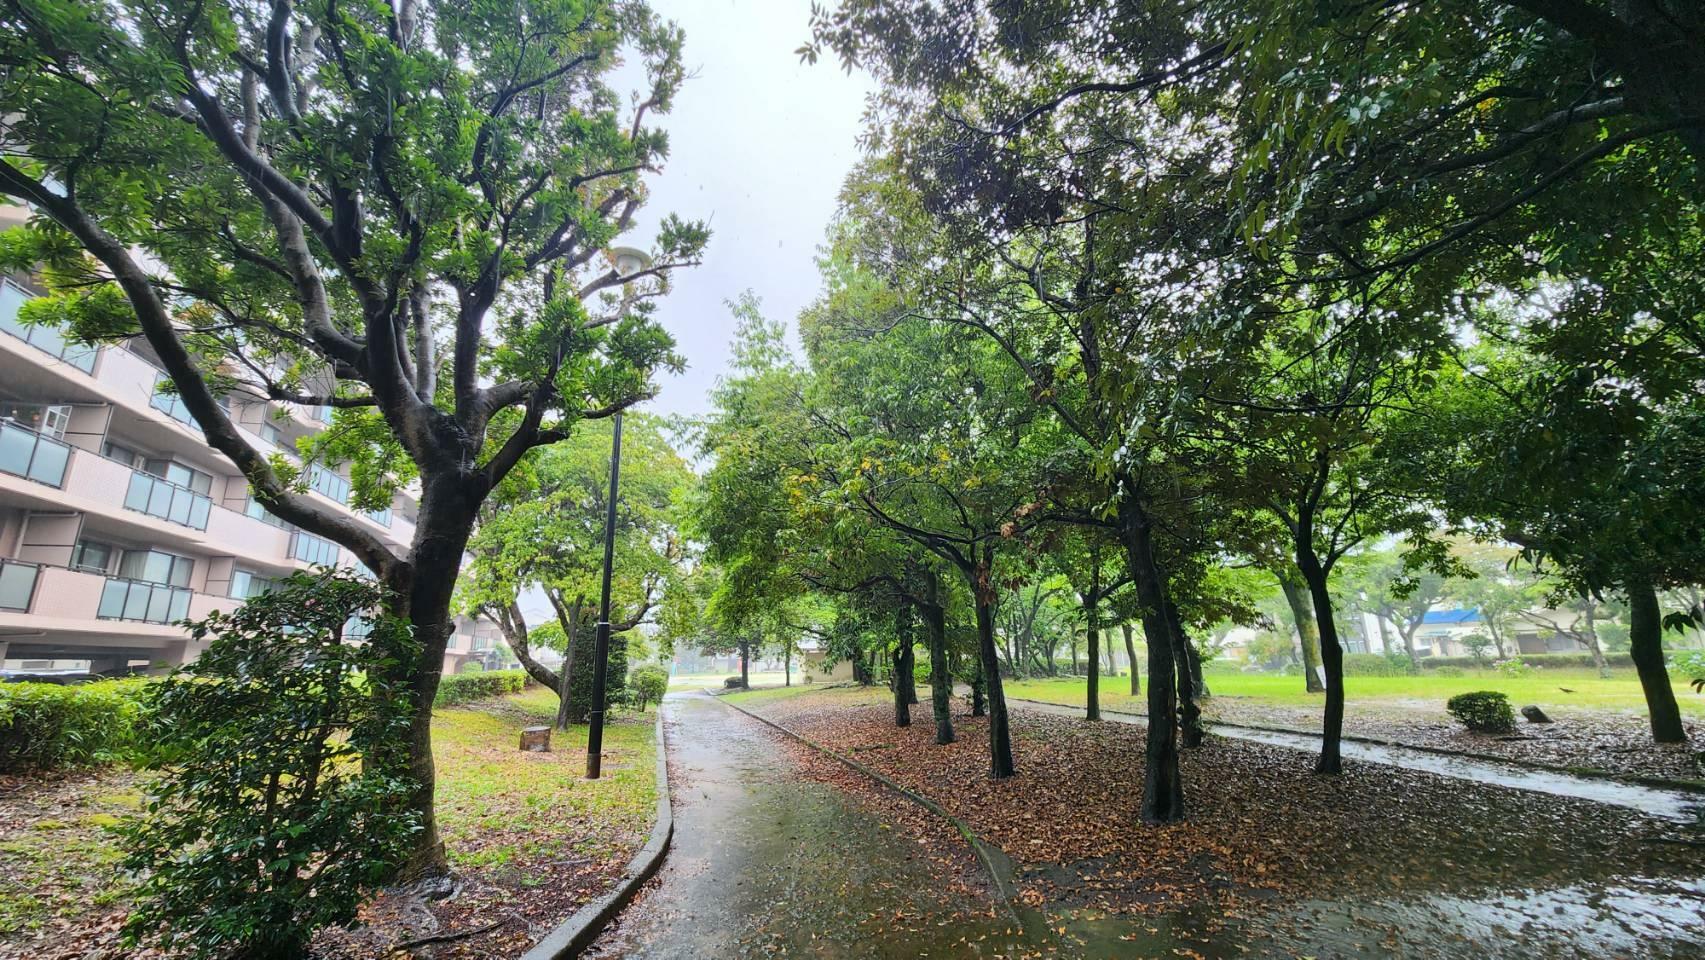 私が訪れた日は少し雨が降っていましたが、晴れた日に散歩をするときっと気持ちいいと思いました。